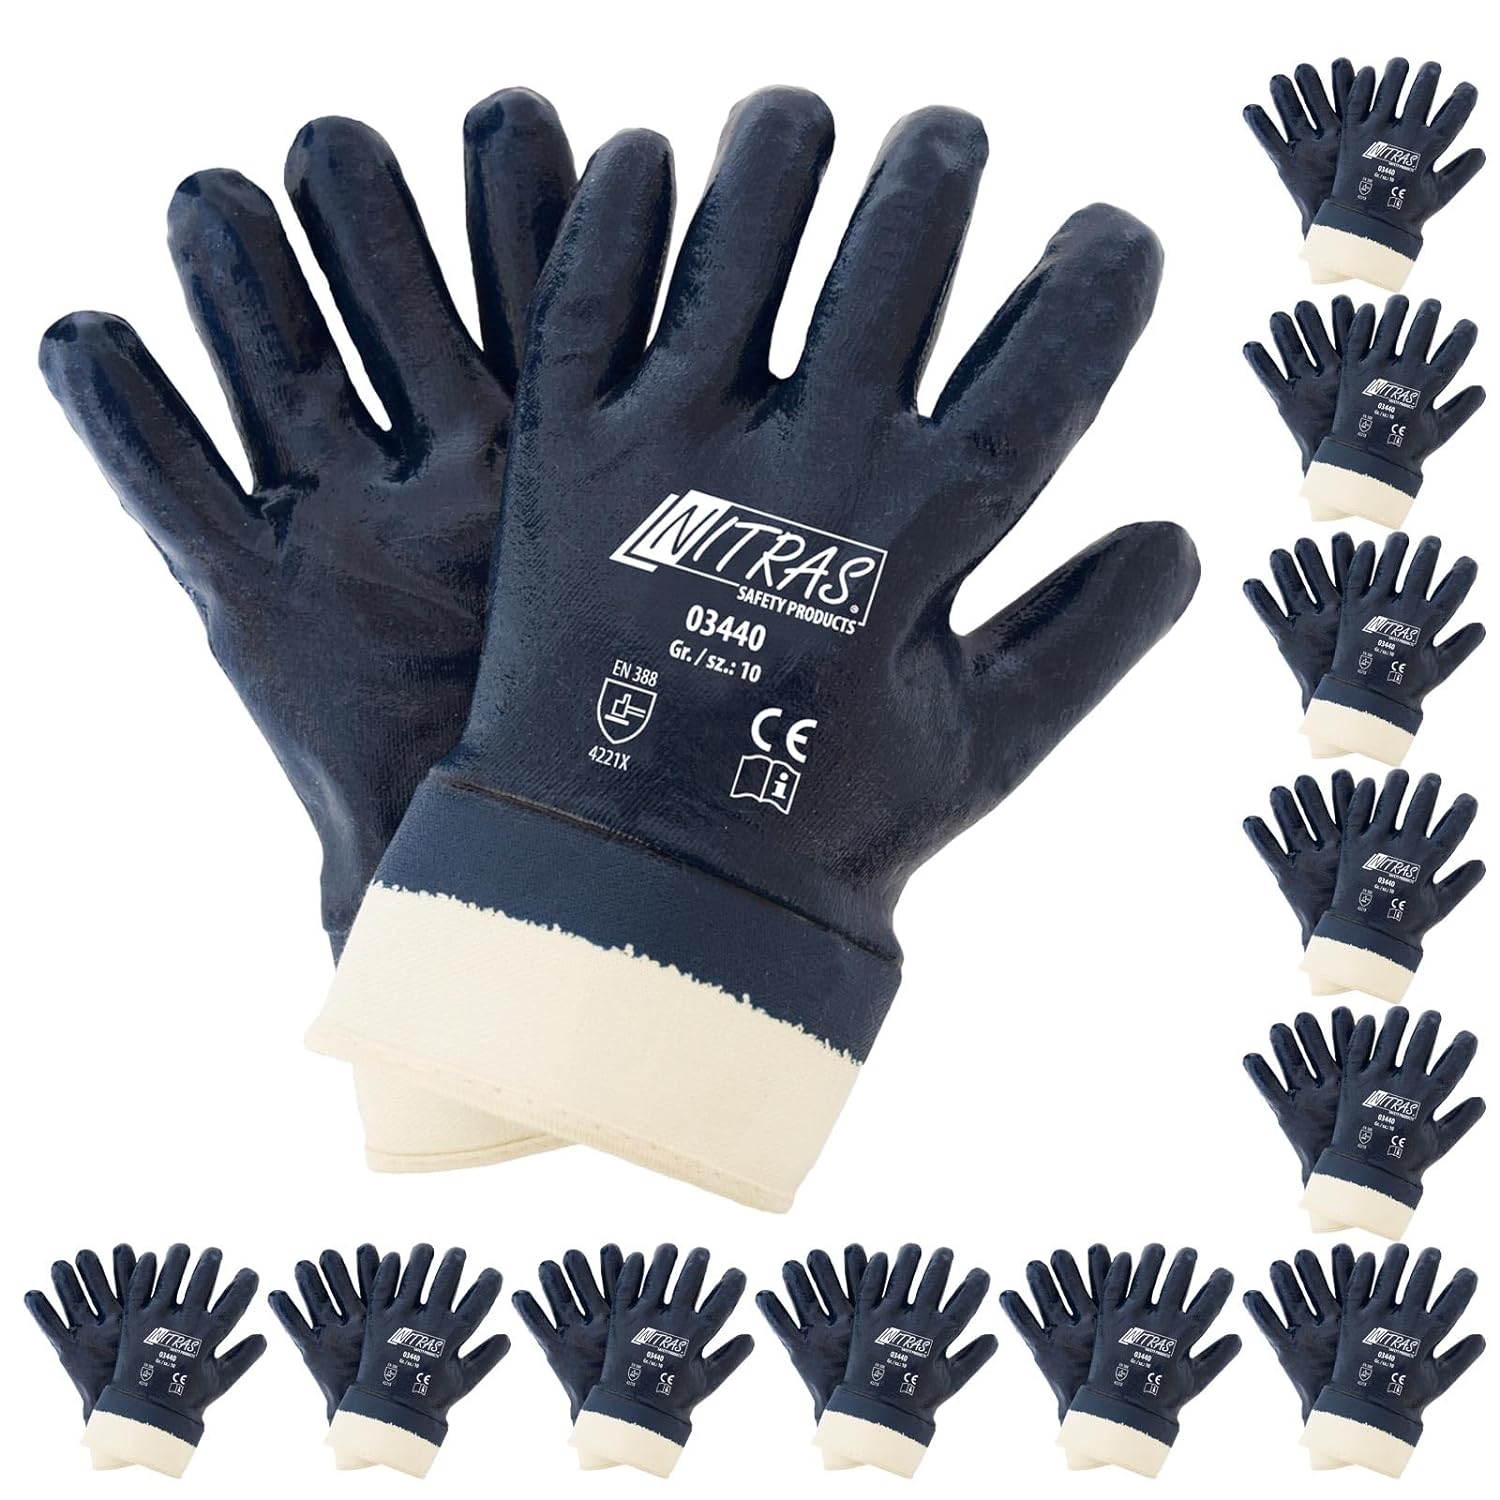 03440 Nitras Baumwoll-Jersey Handschuh Nitril-Vollbeschichtung Segeltuch 12 Paar Gr 8-11 Nitras